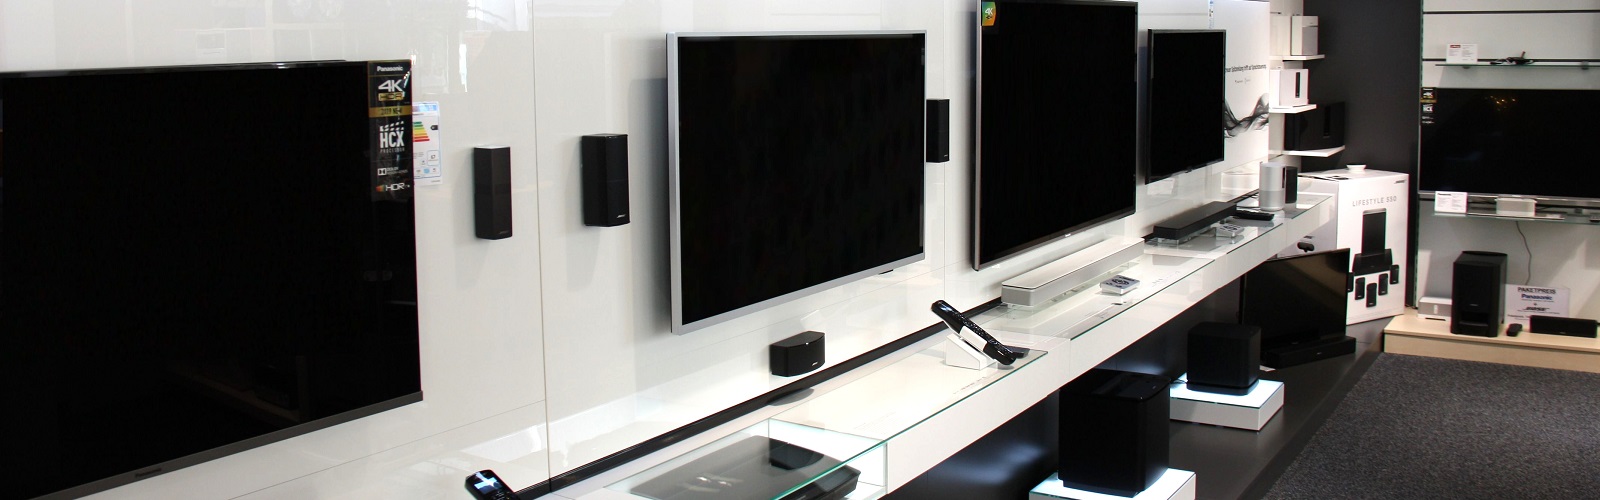 Auswahl an LED-TVs und Bose Soundsystemen